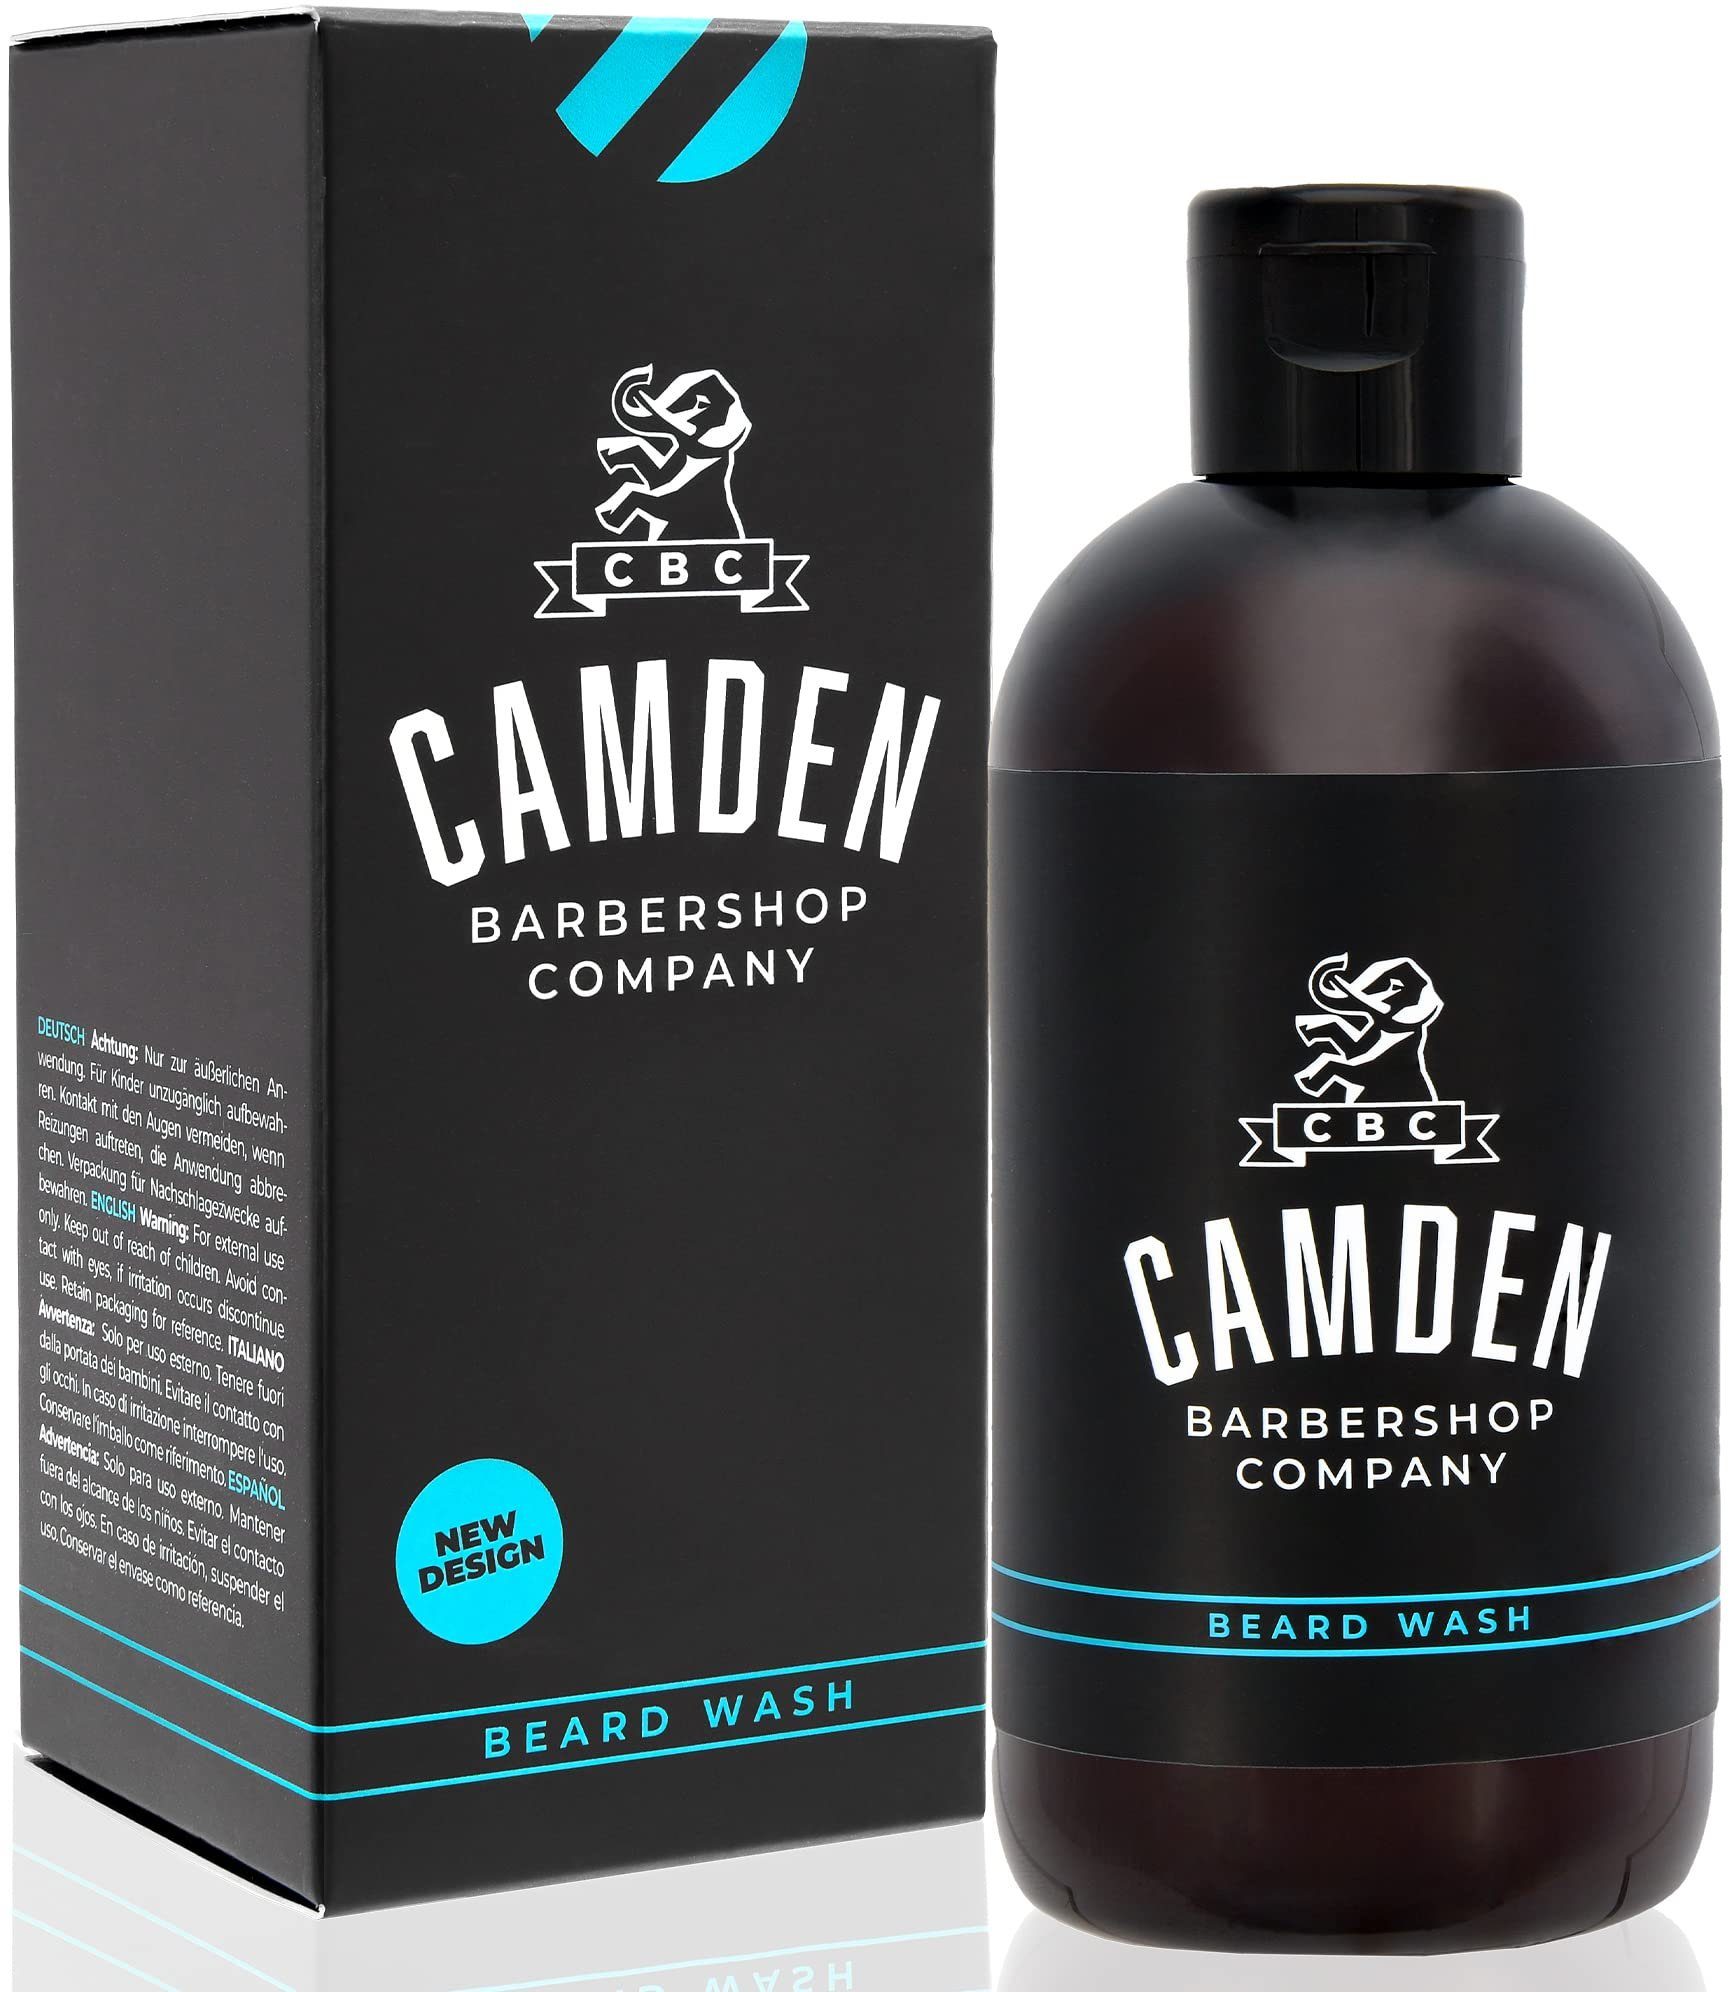 Camden Barbershop Haarbürste Camden Barbershop: Premium Männer Bartpflege-Set, 1-tlg., Camden Barbershop: Deluxe BartpflegeSet für Männer